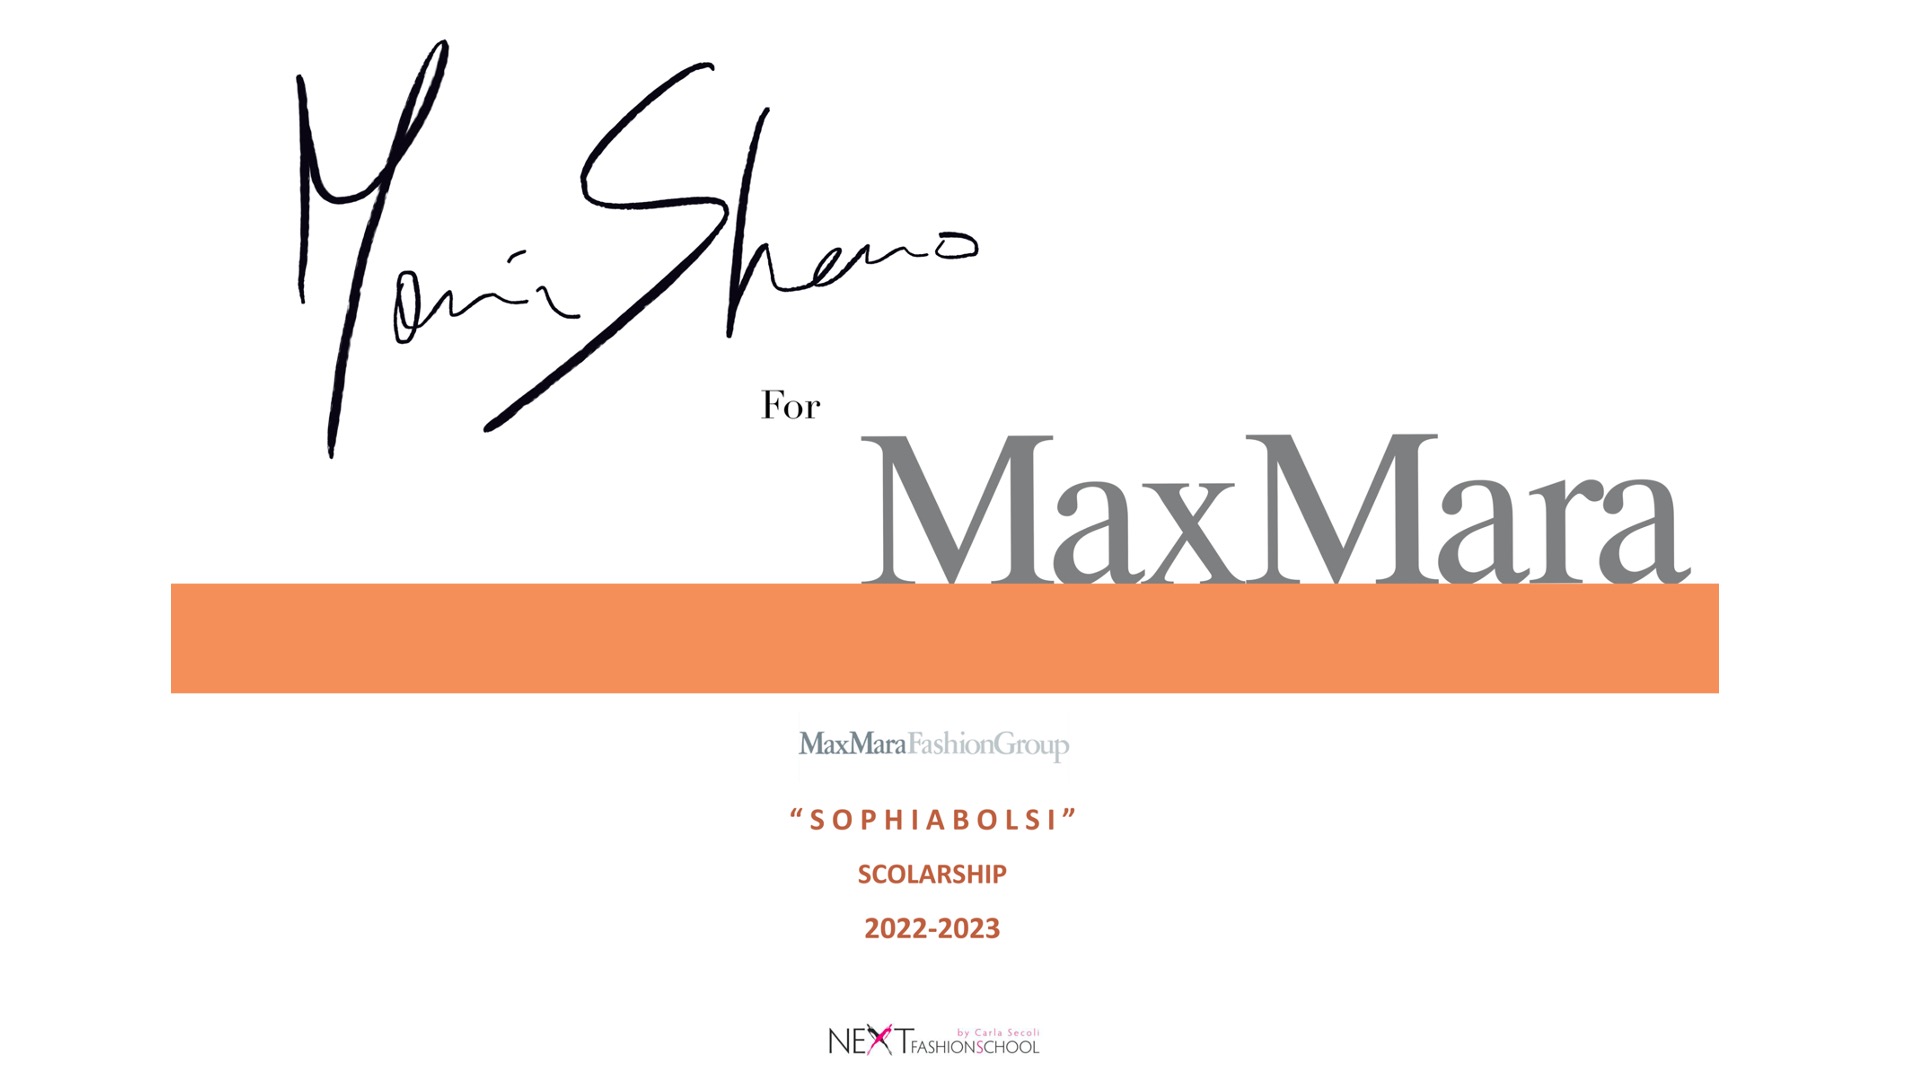 Next e Gruppo Max Mara in memoria di Sophia